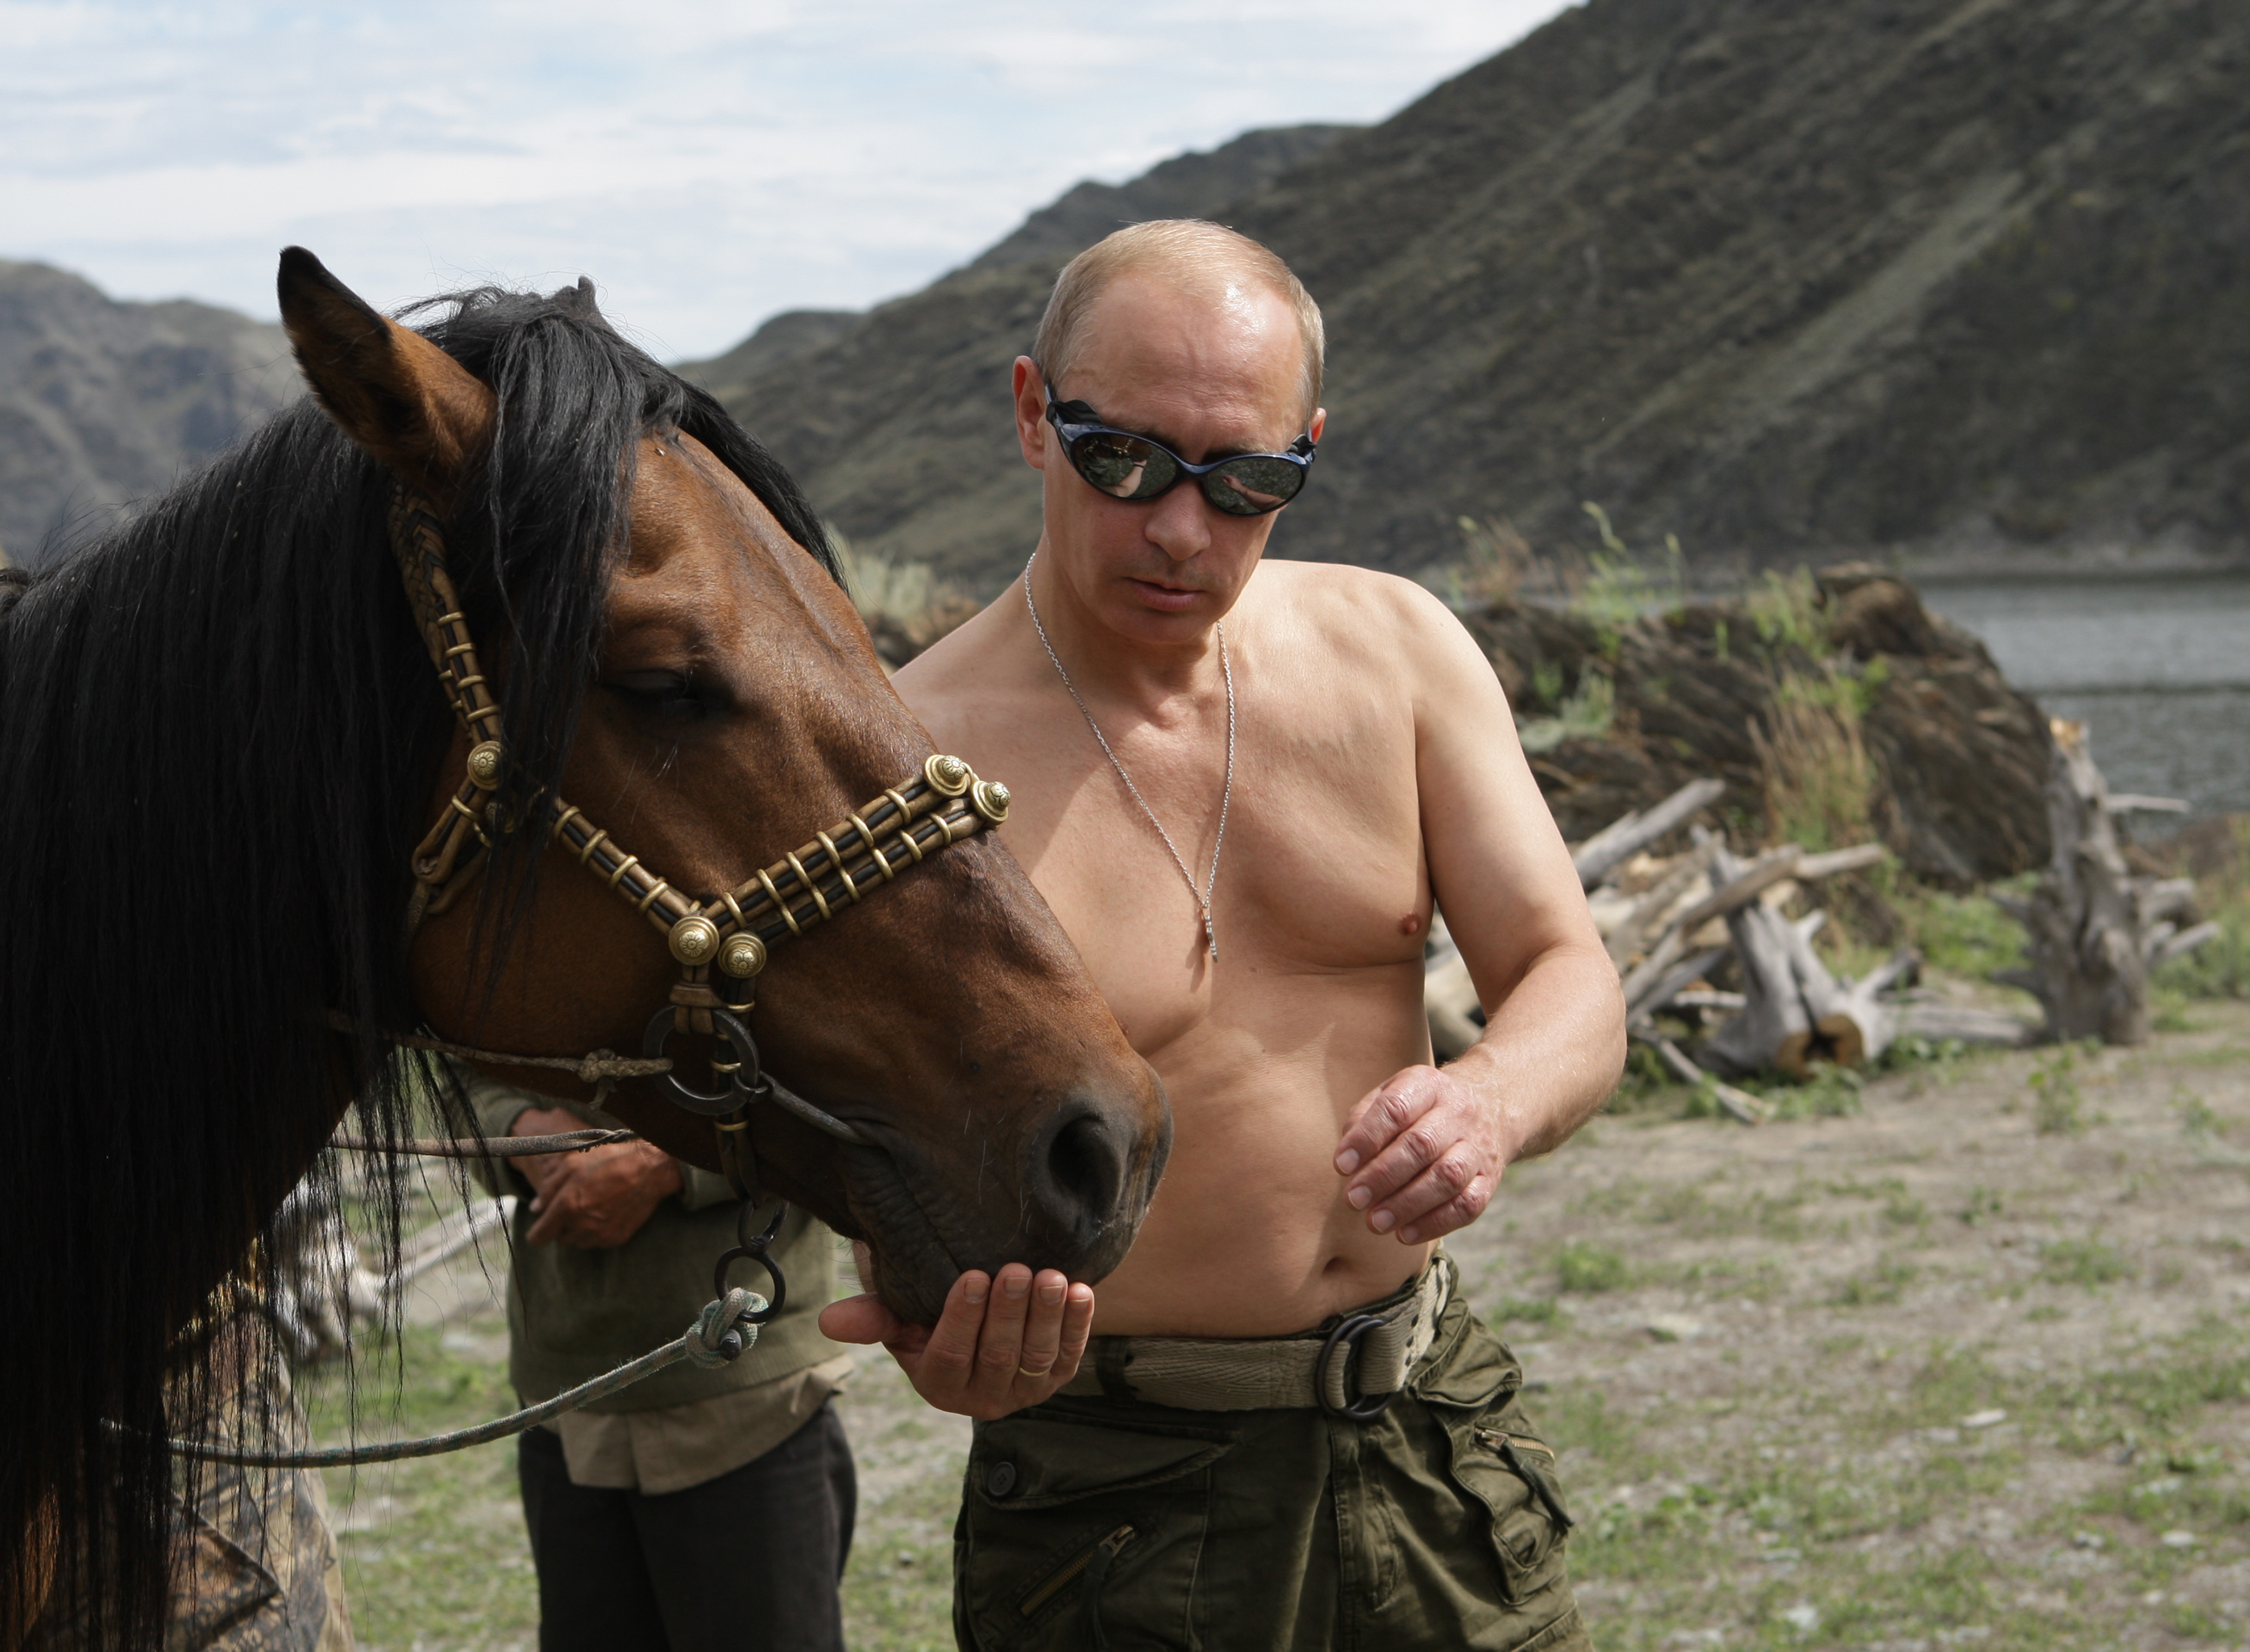 Владимир Владимирович Путин с лошадью на прогулке, скачать фото, президент, голый торс